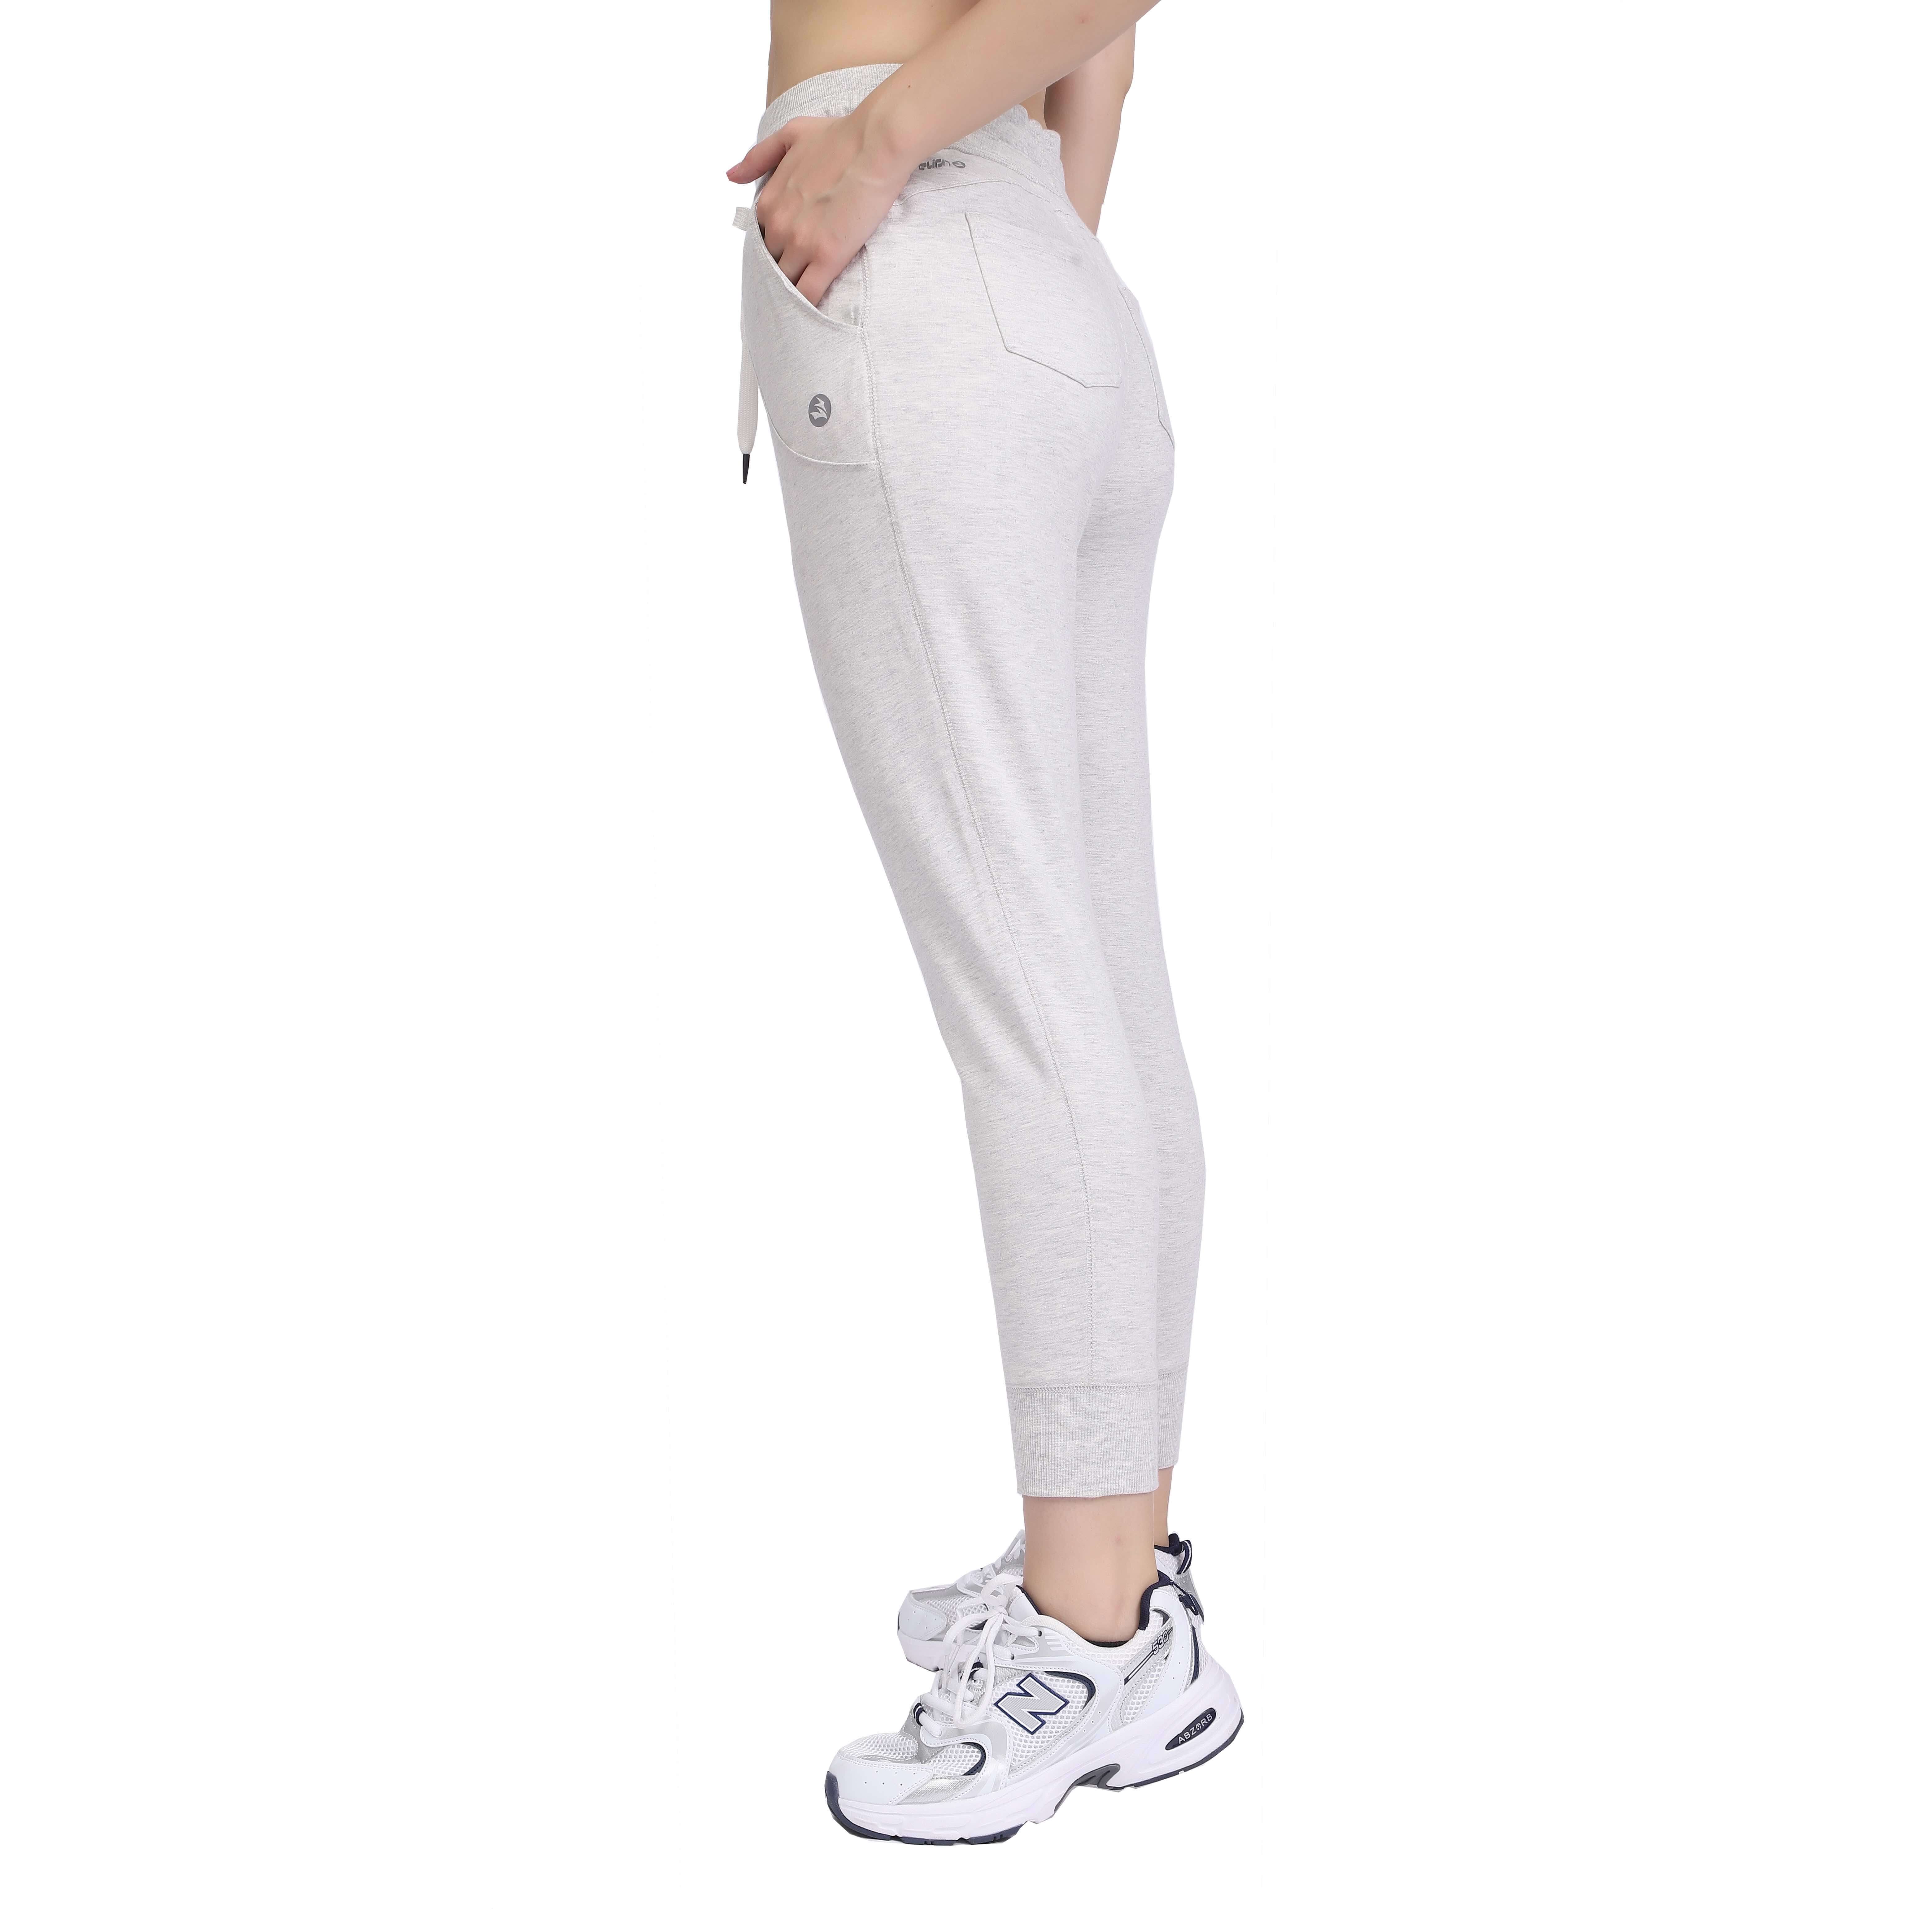 Pantalones deportivos deportivos para mujer Pantalones deportivos con cordones y bolsillos